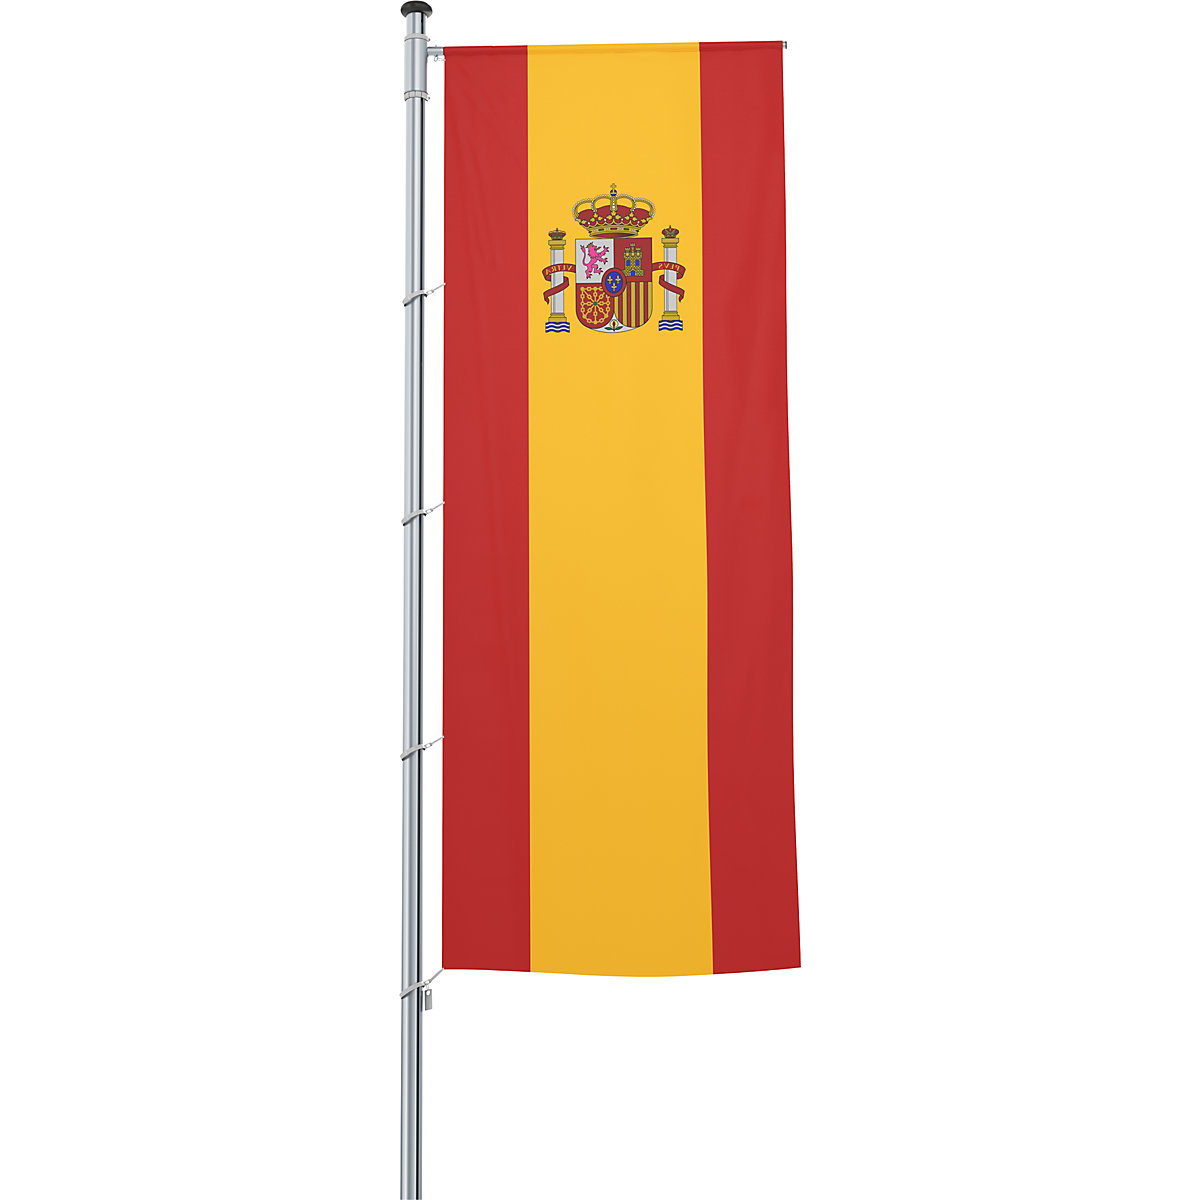 Zastava s prečko/državna zastava – Mannus (Slika izdelka 42)-41